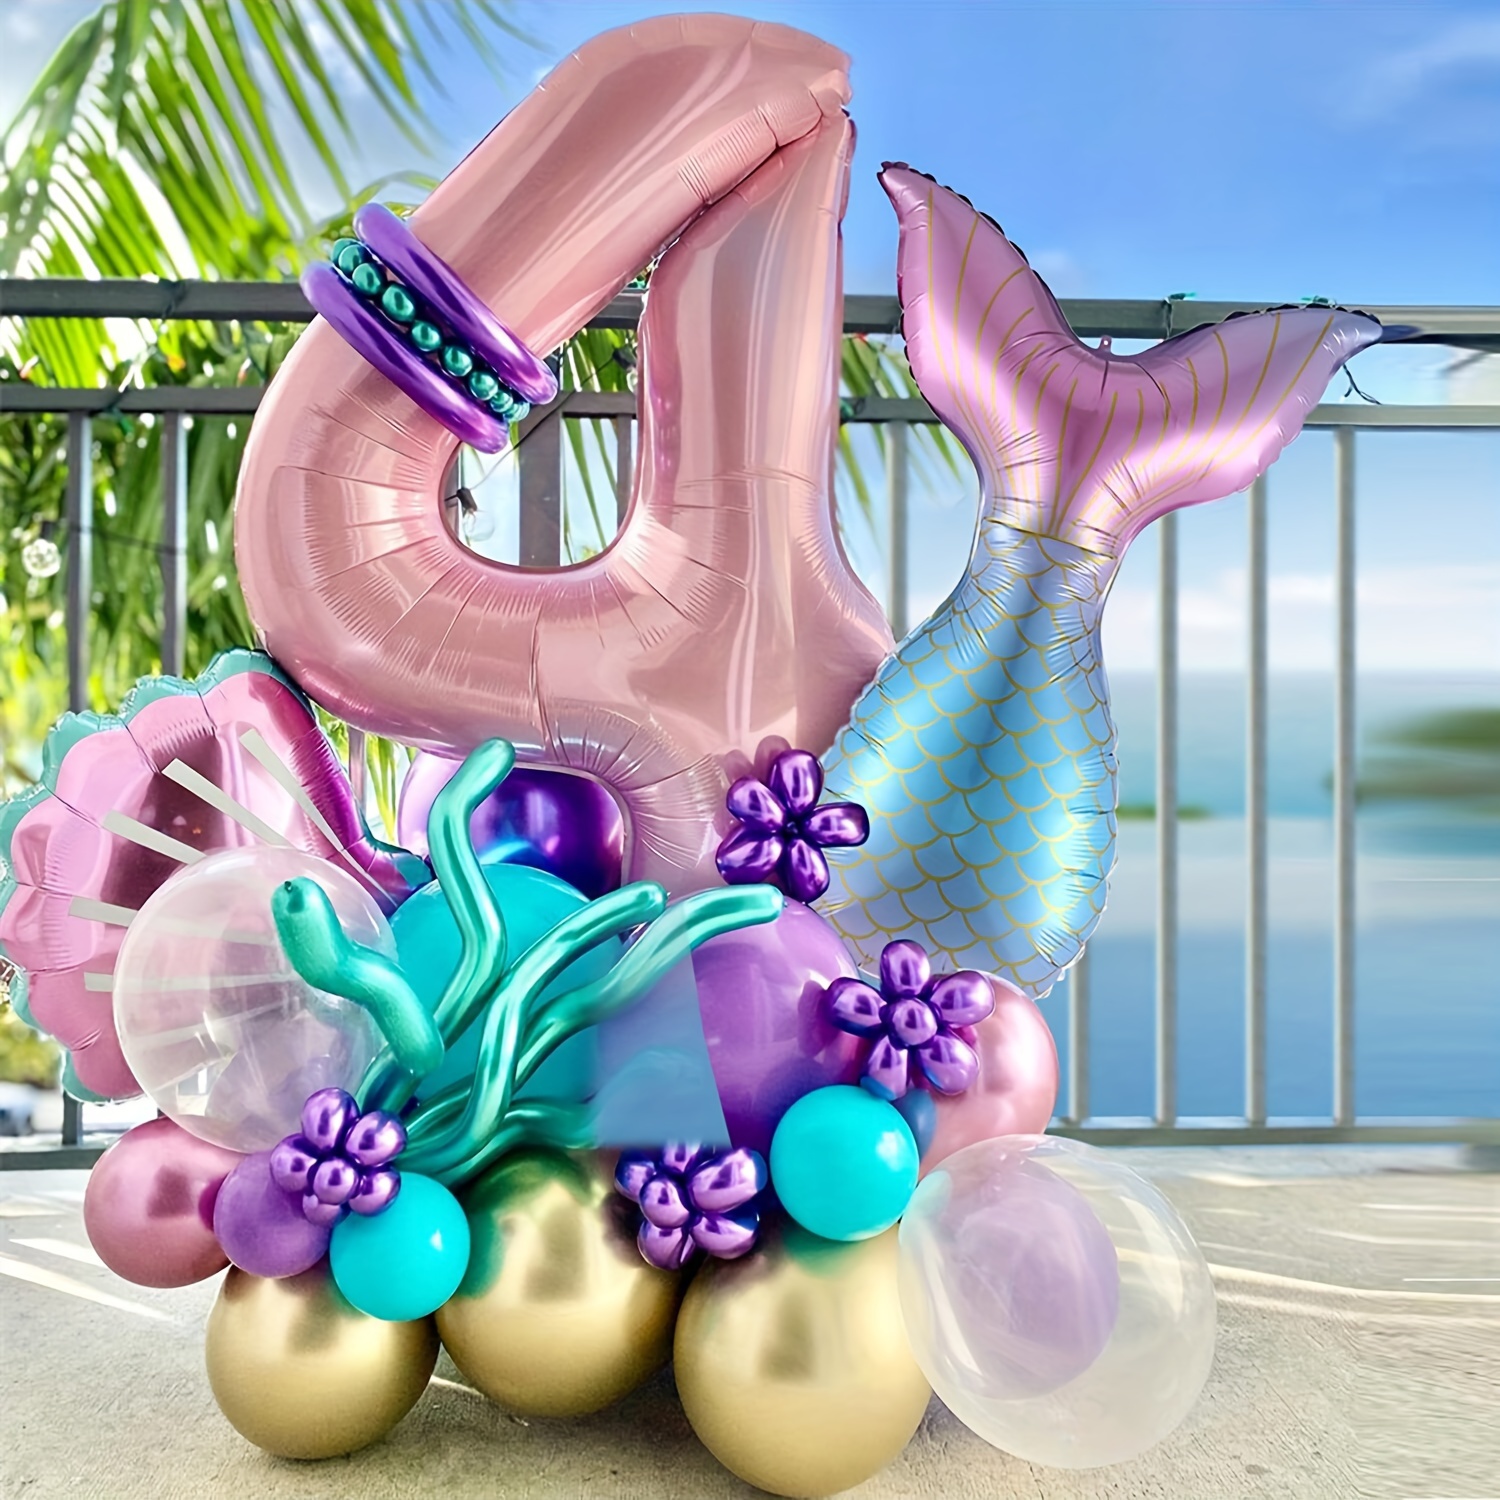 Piñata de conchas marinas piñata de sirena piñata de conchas marinas para  niños y niñas decoración de fiesta temática de sirena recuerdo de baby